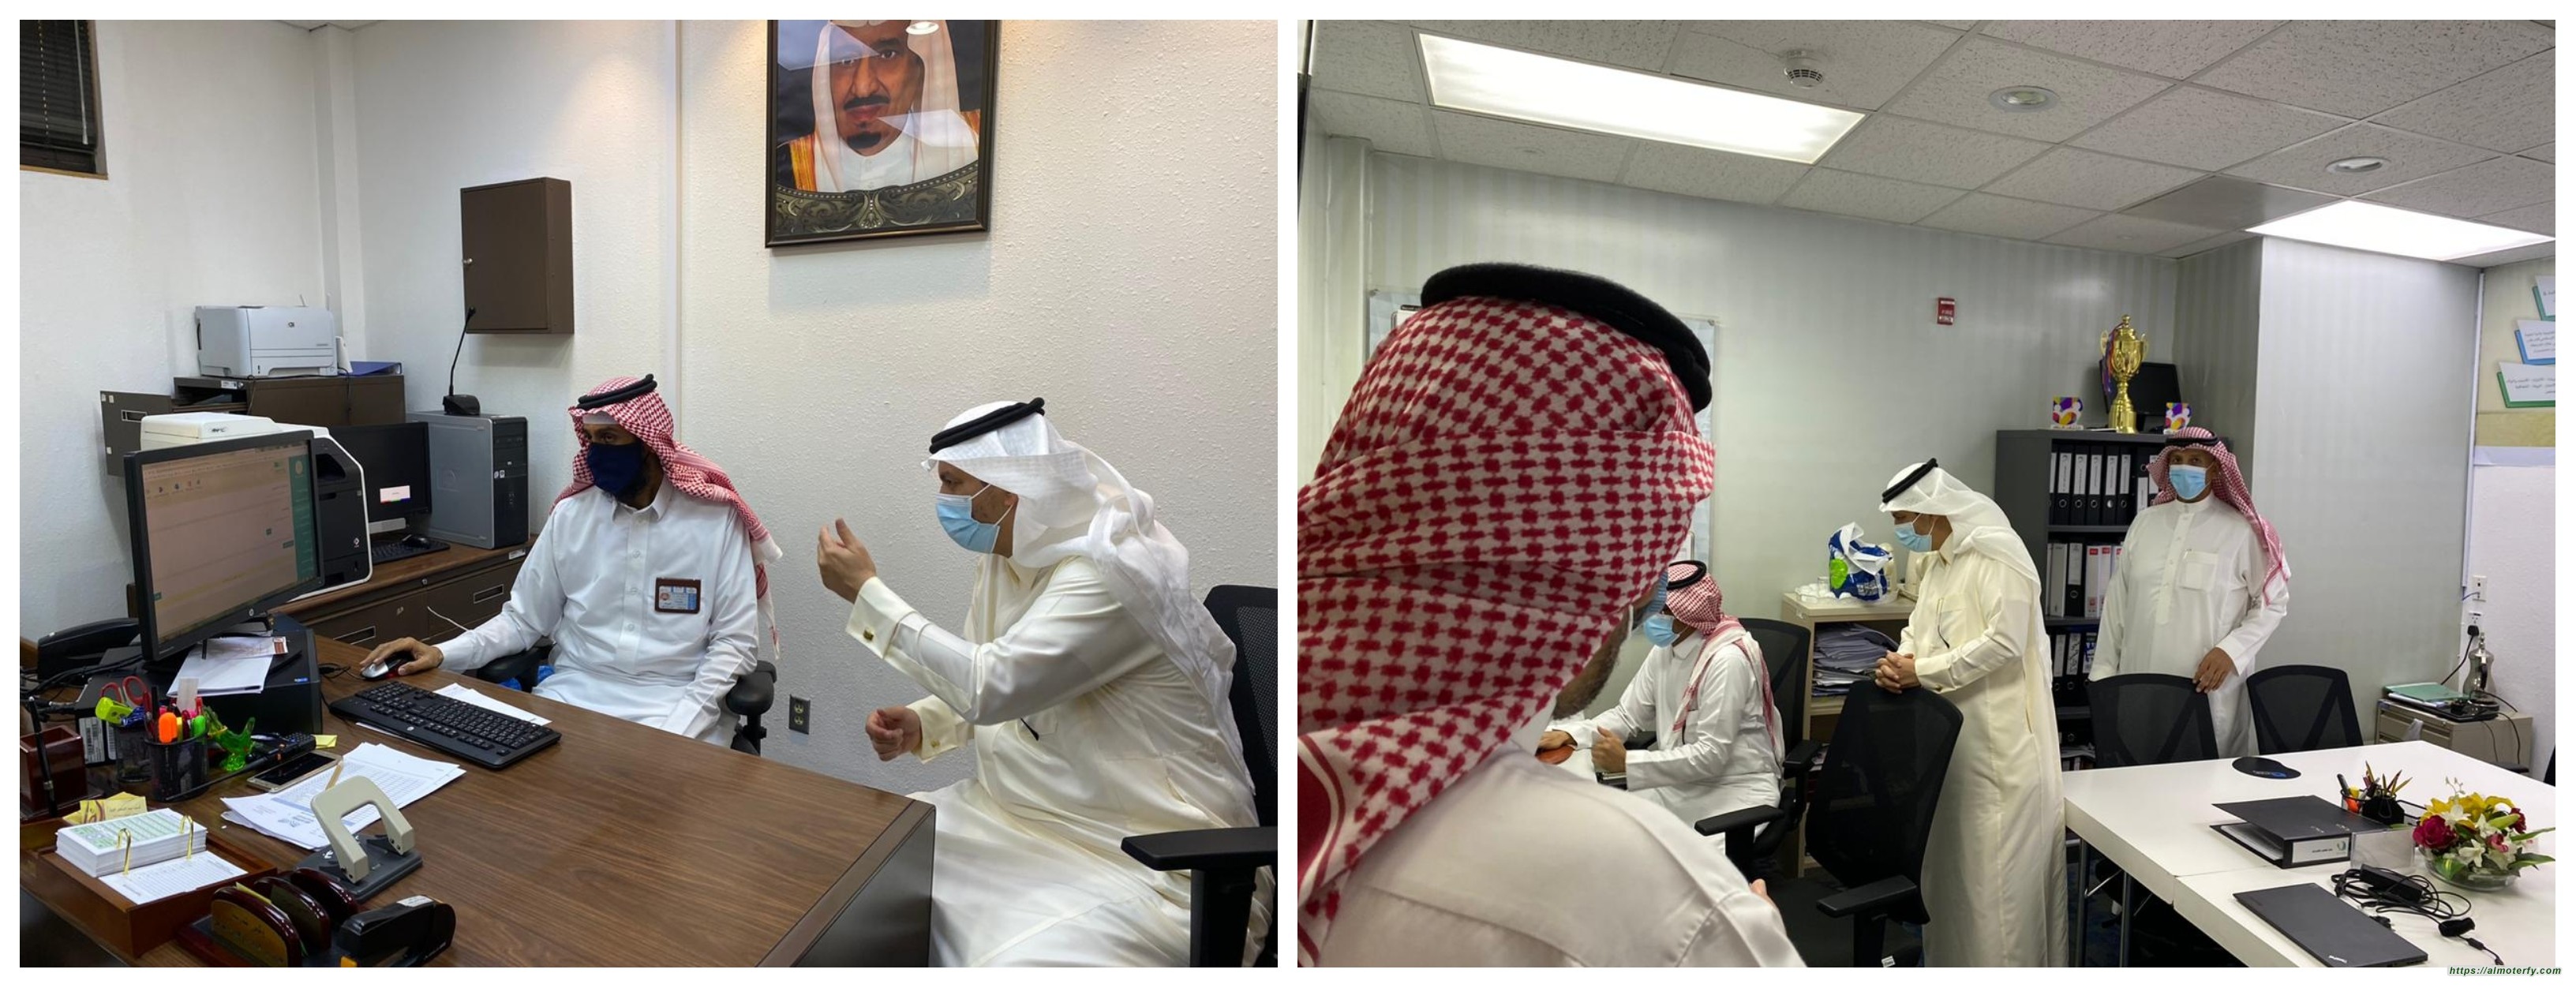 مدير تعليم الأحساء يزور ابتدائية الأمير محمد بن فهد  تزامناً مع بدء العام الدراسي ١٤٤٢ھ